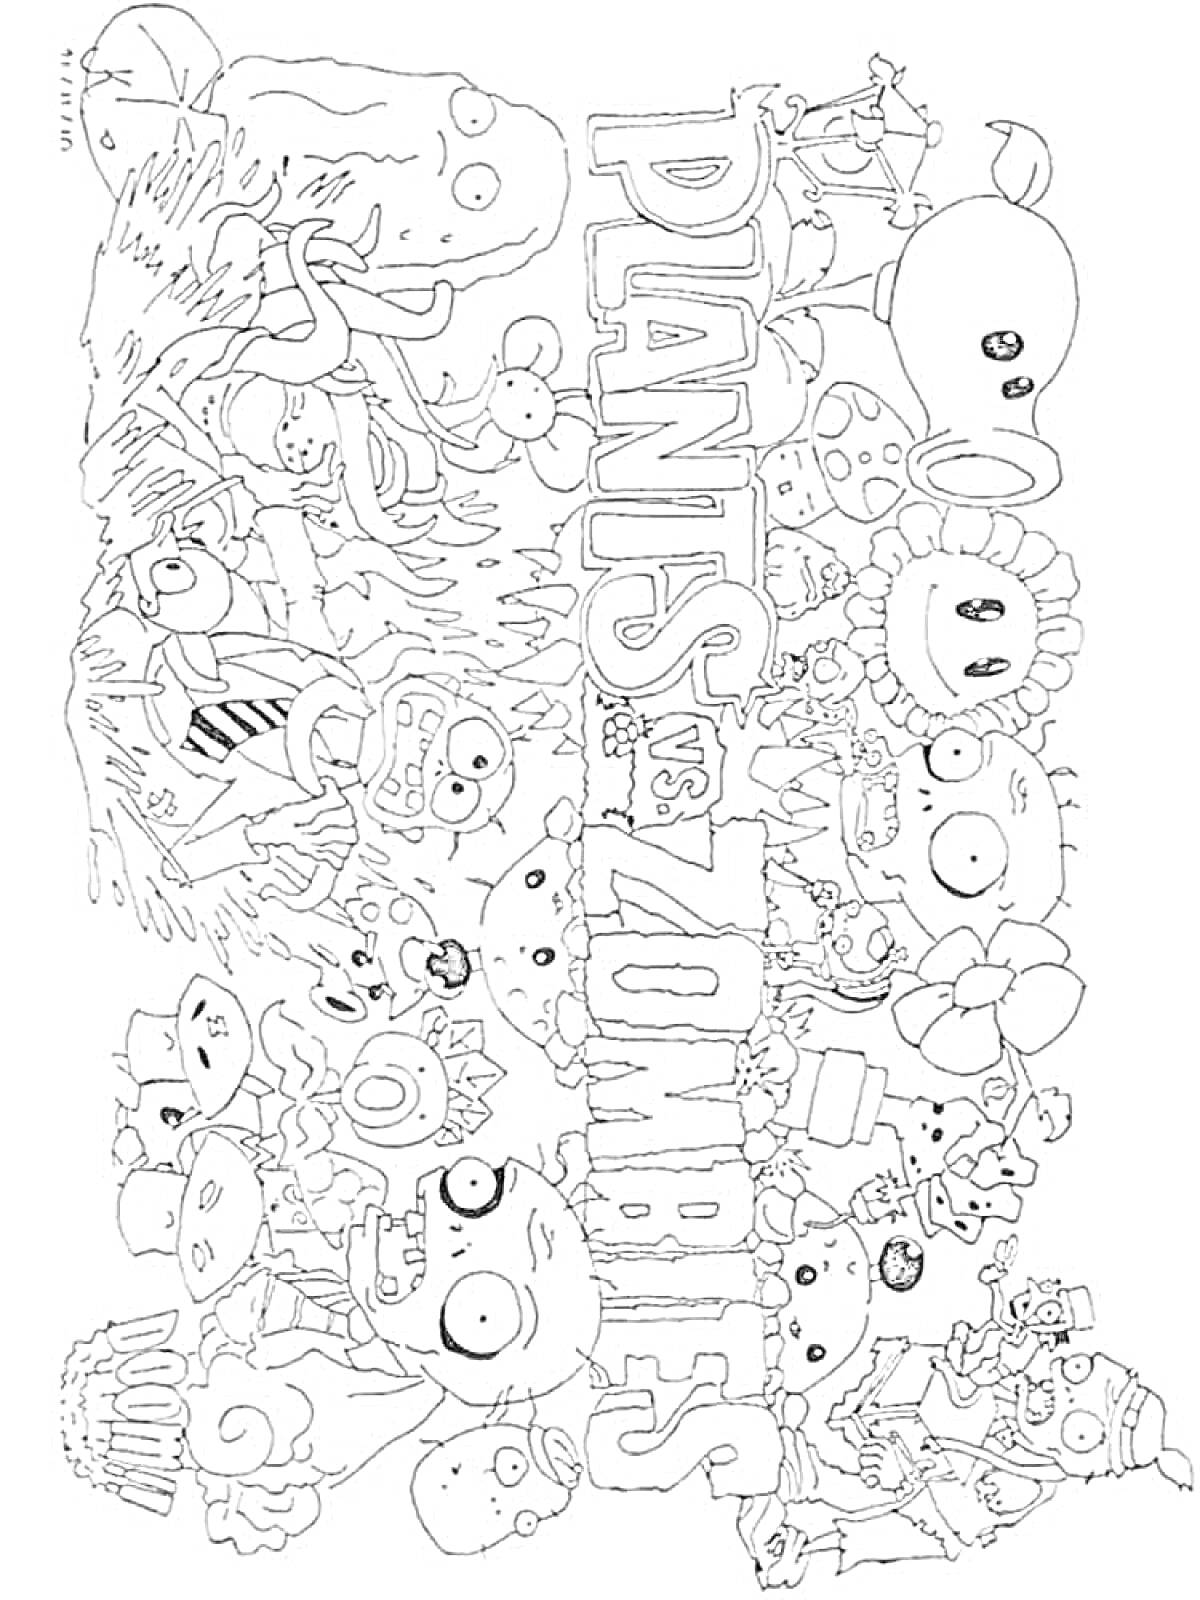 Зомби против растений с различными растениями и зомби, логотип в центре